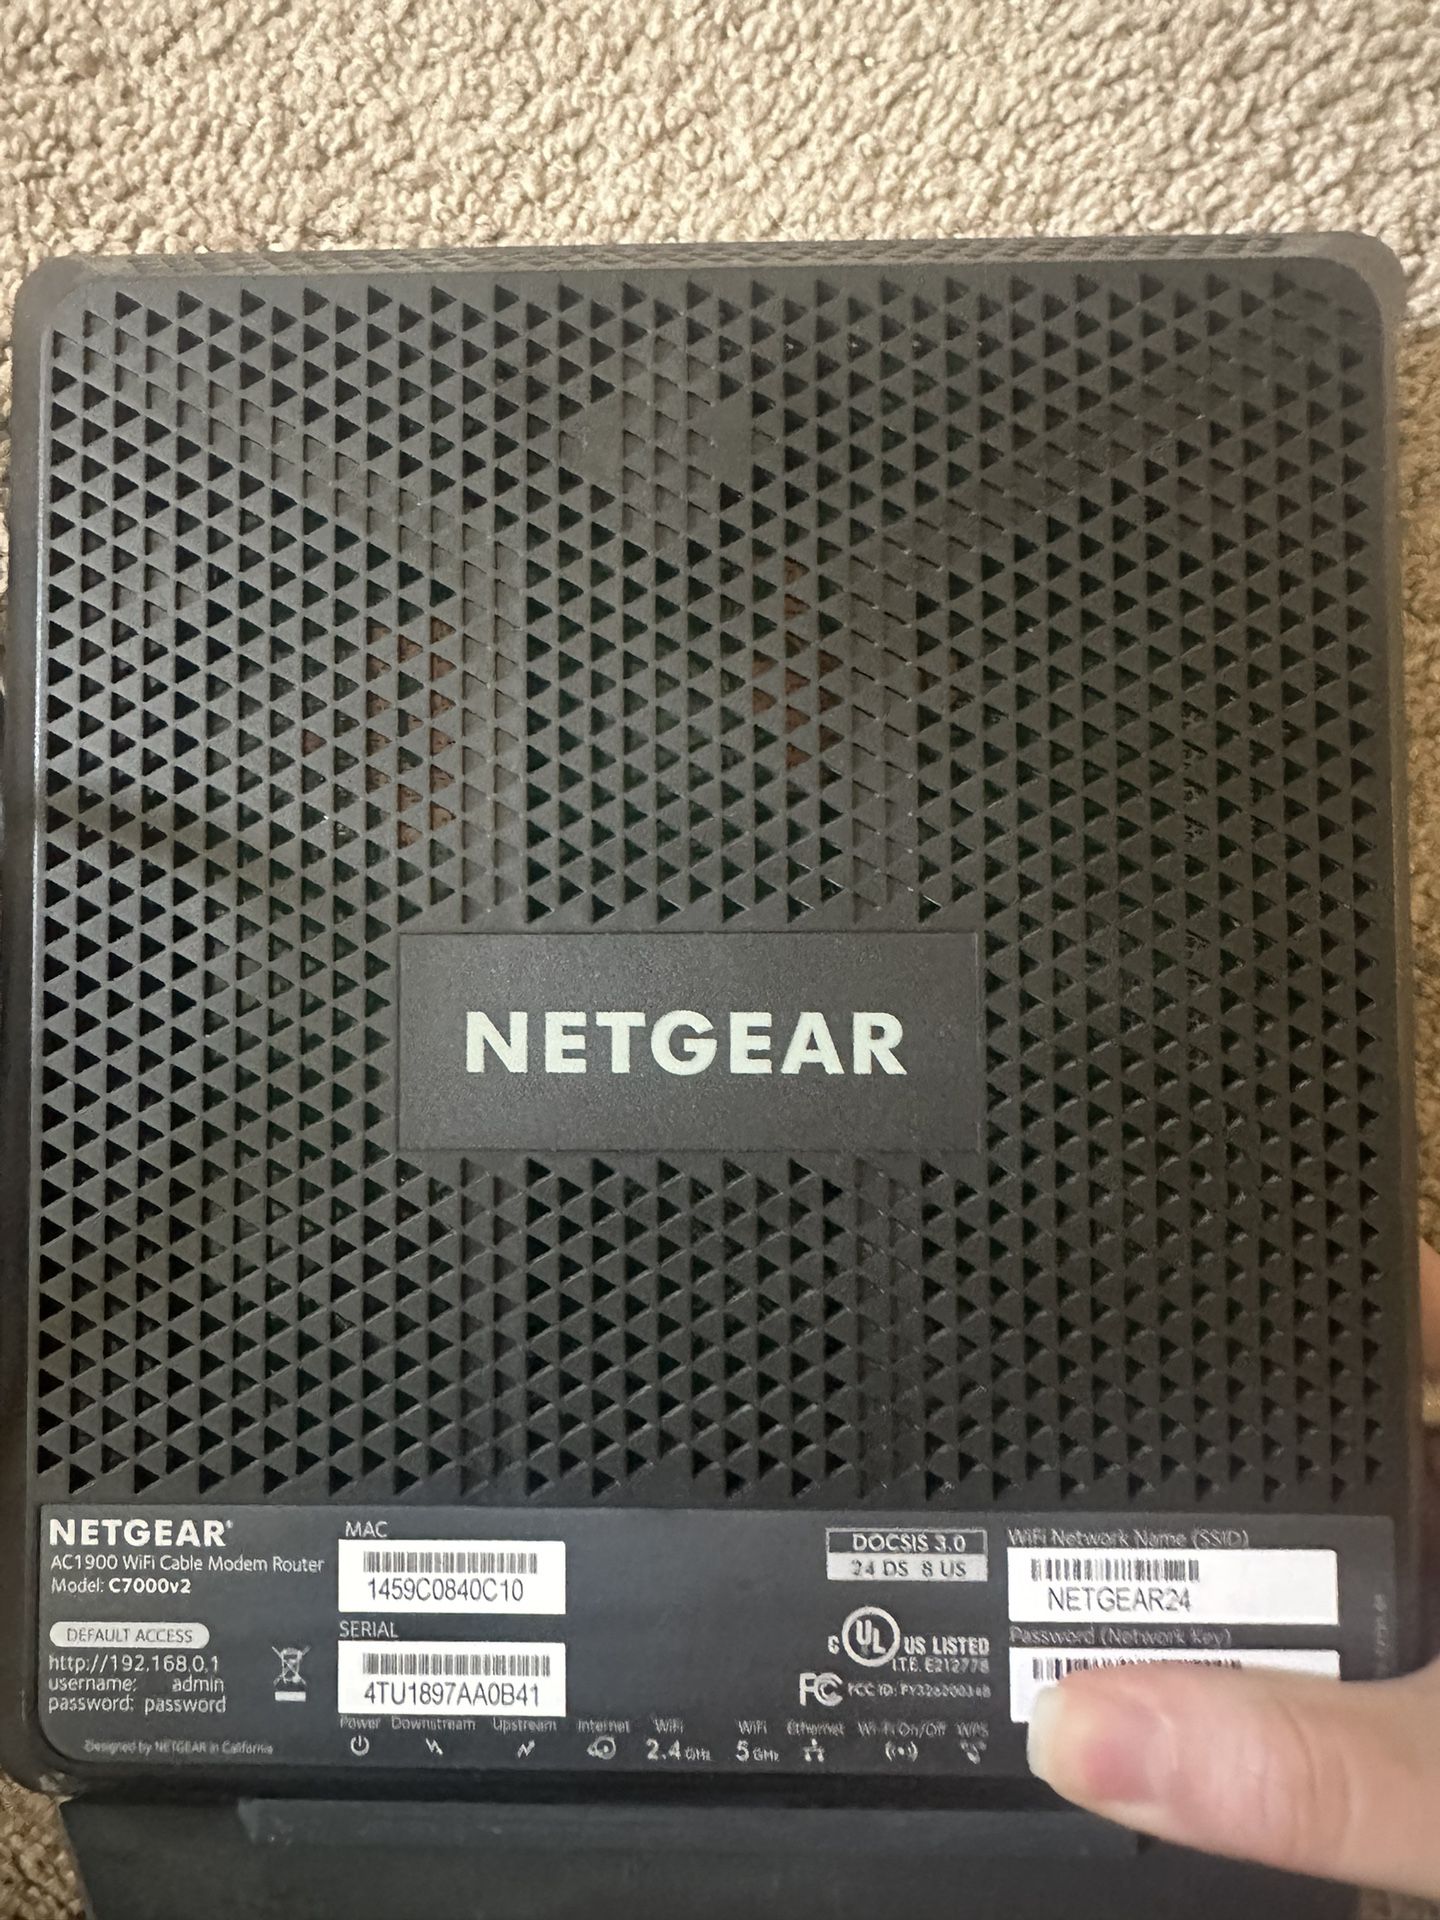 Netgear C7000v2 Modem + Router